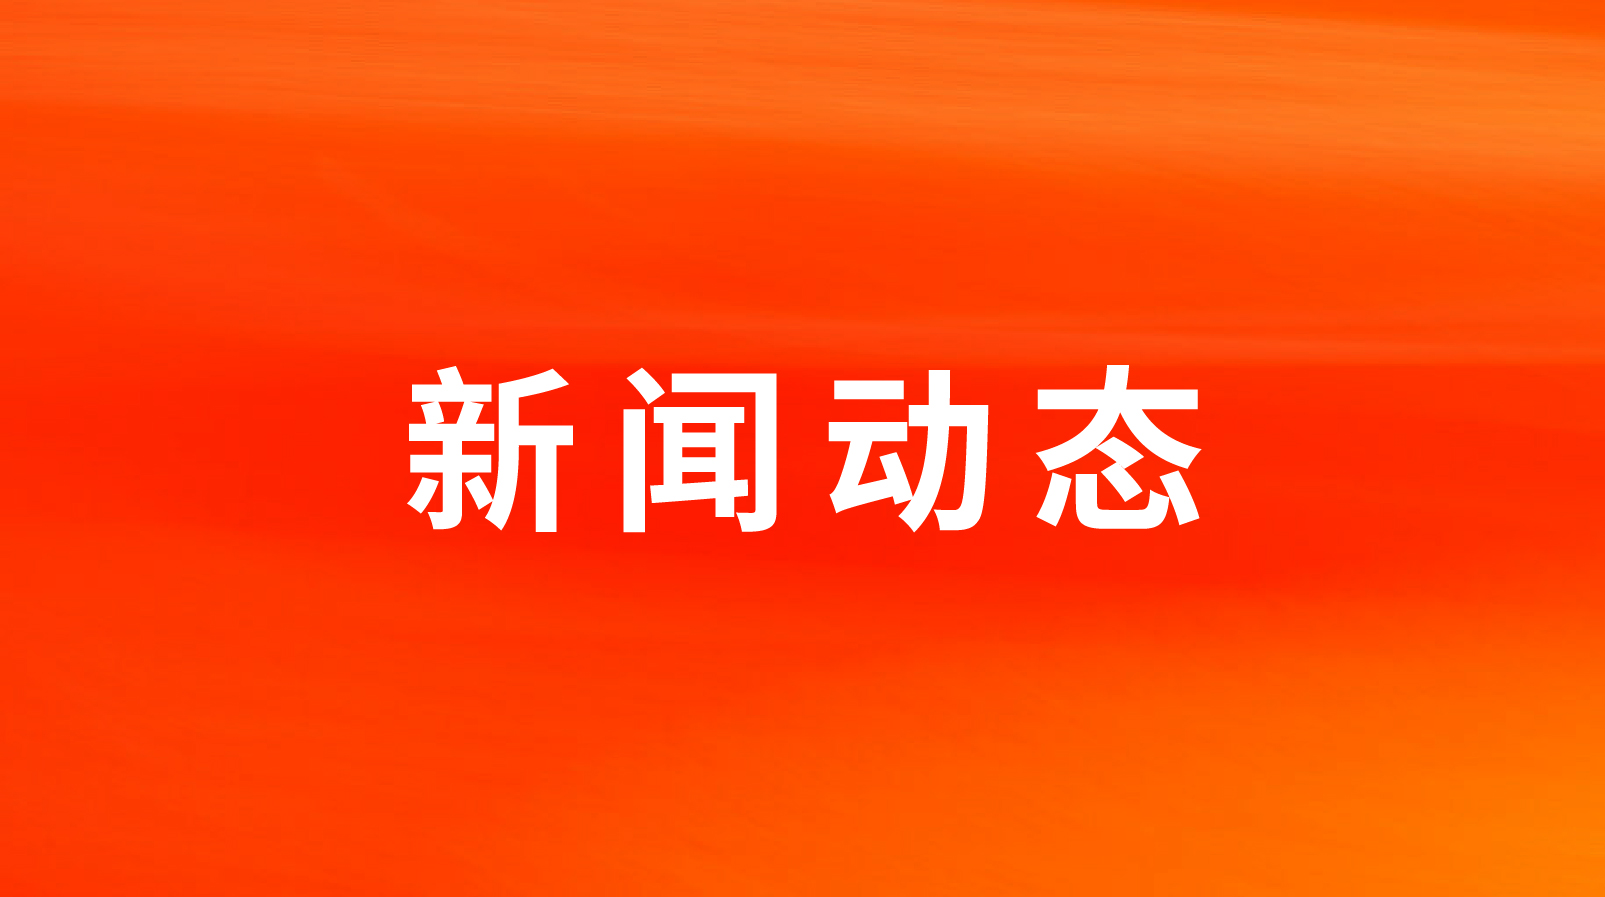 澳门新莆京游戏大厅荣获2022年度中国团餐供应链优秀服务商